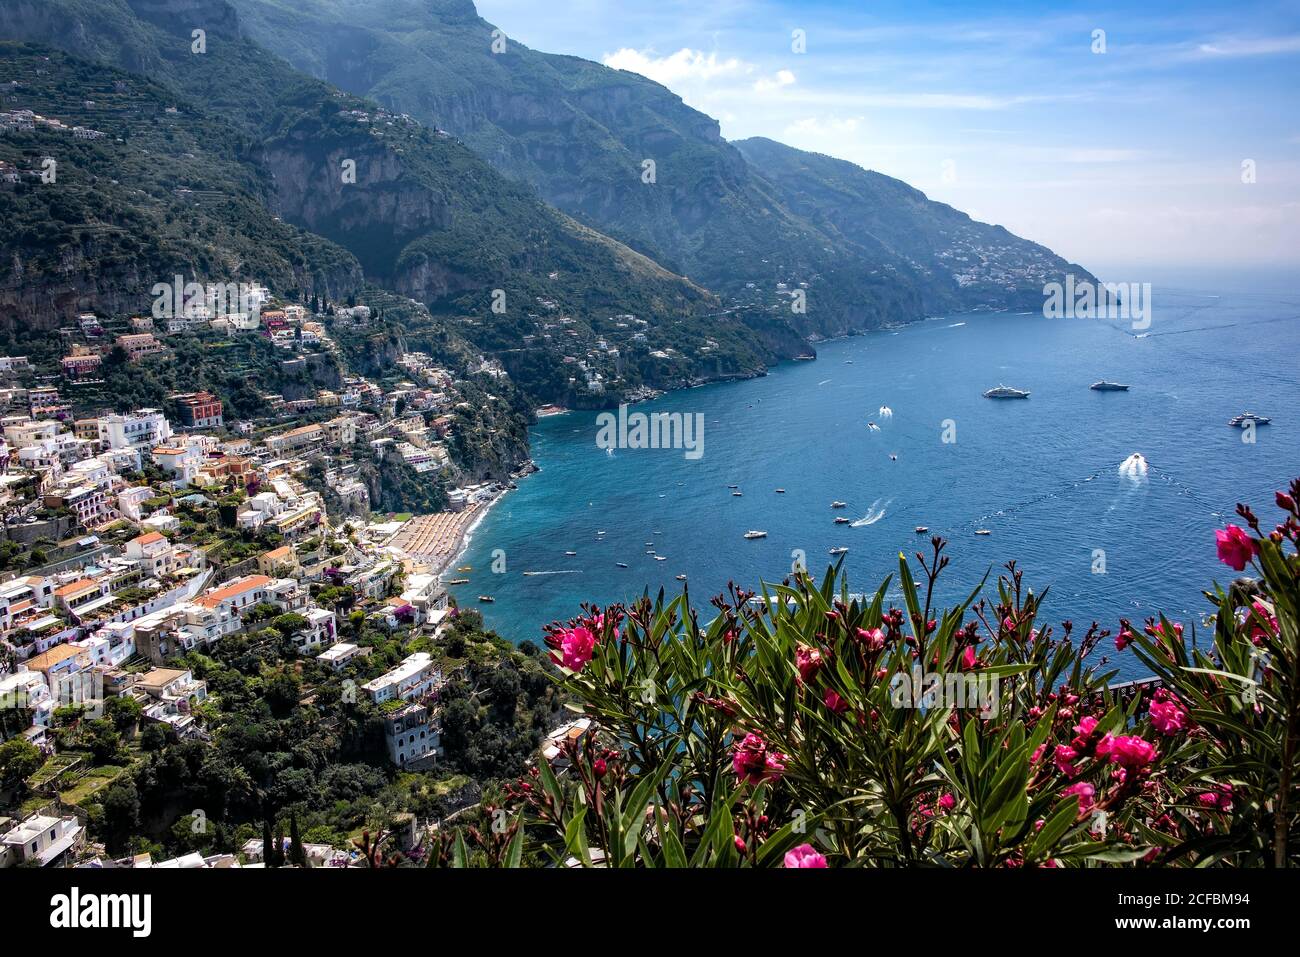 La côte amalfitaine, la Méditerranée et le village de Positano, en Italie Banque D'Images